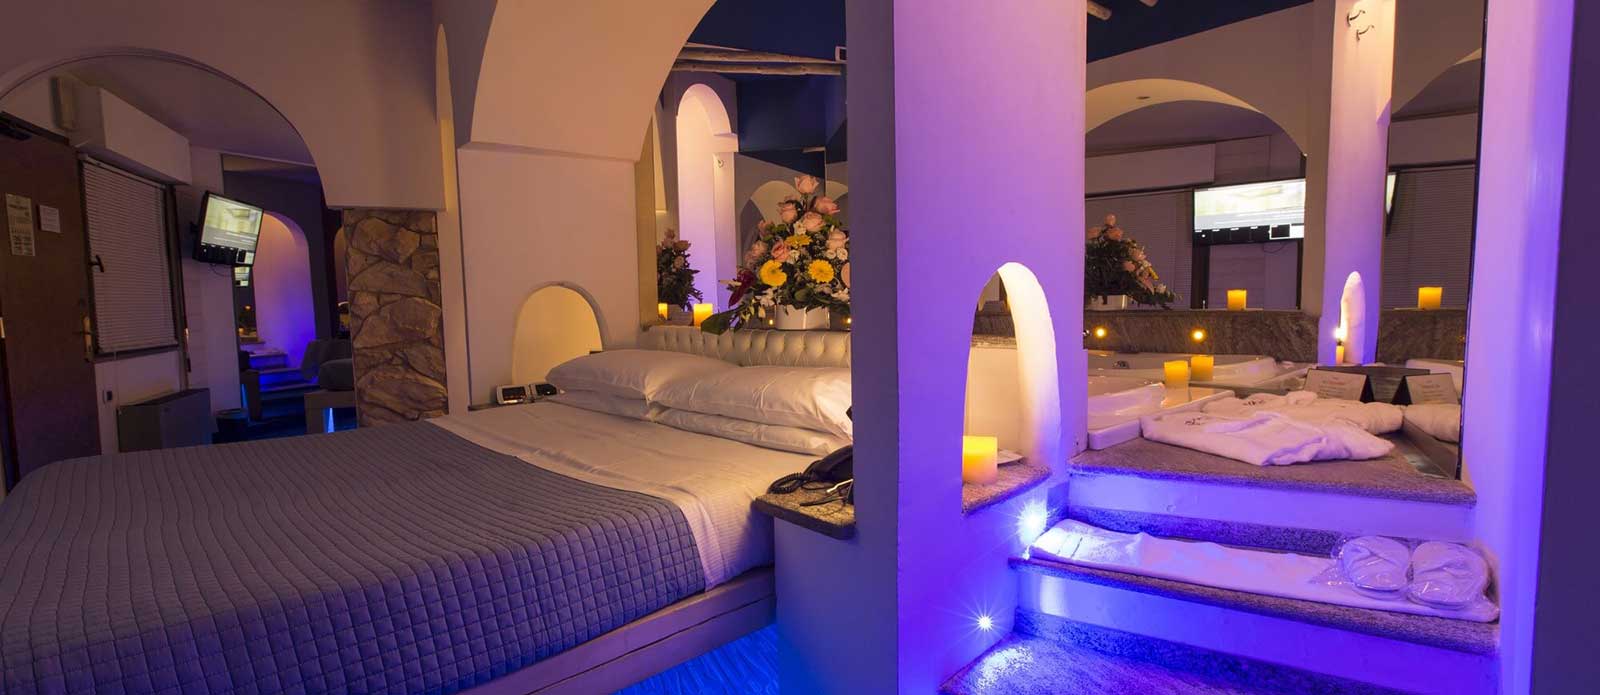 Motel K Junior Suite Santorini vista su letto matrimoniale con vasca idromassaggio dietro al letto , servizio candele in suite, camera a tema isole greche